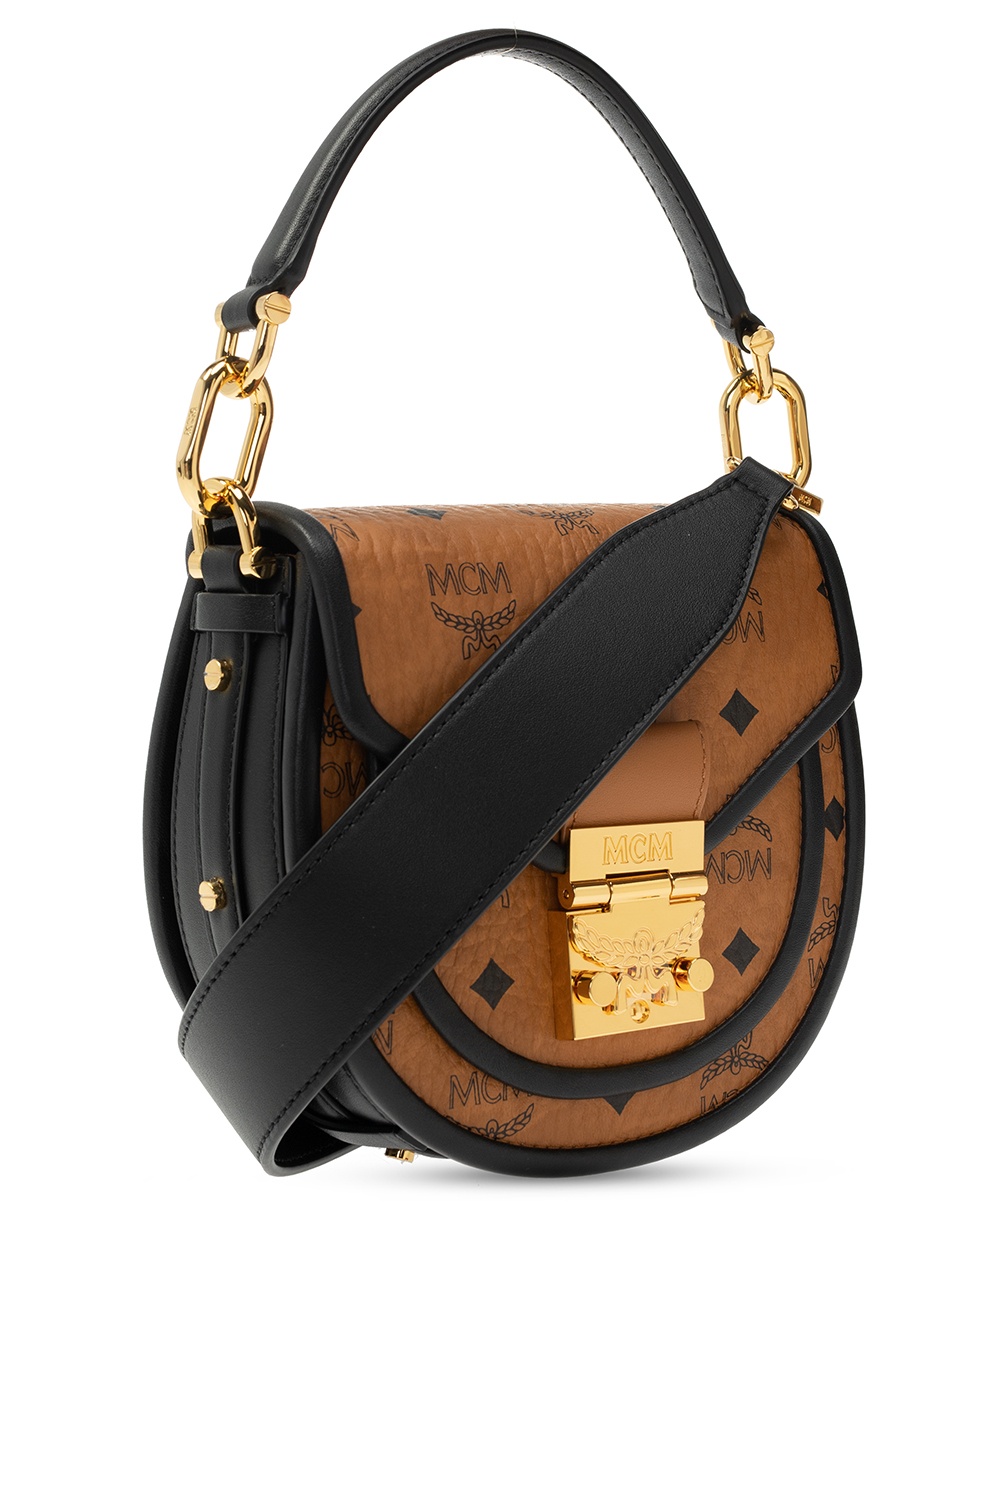 MCM Patricia Visetos Shoulder Small Handbags